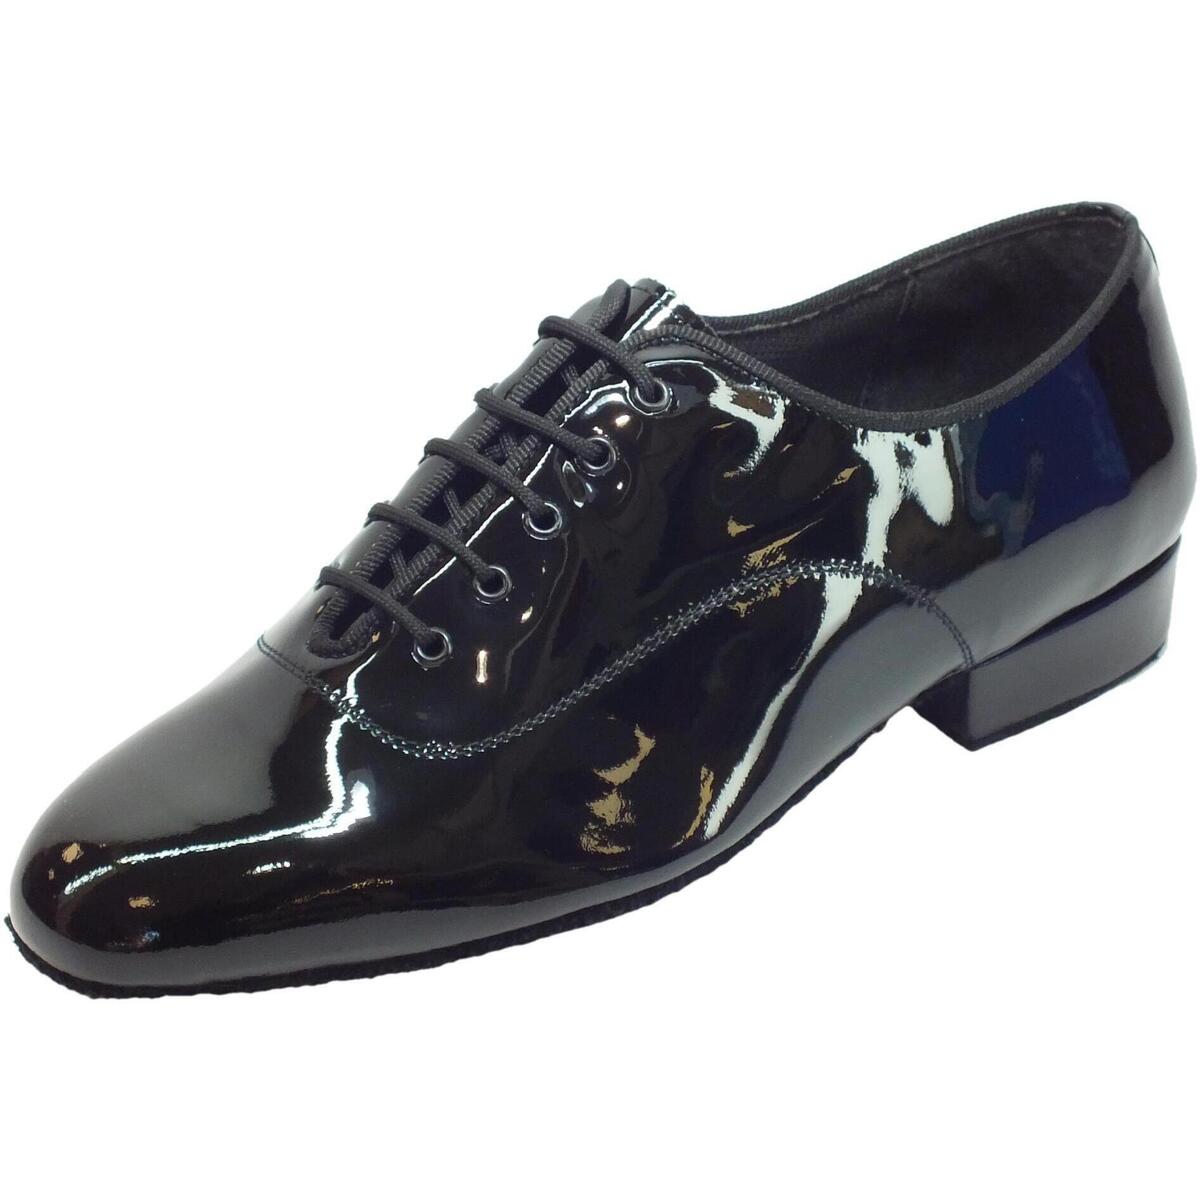 Scarpe Uomo Sandali sport Vitiello Dance Shoes Classic vernice Nero